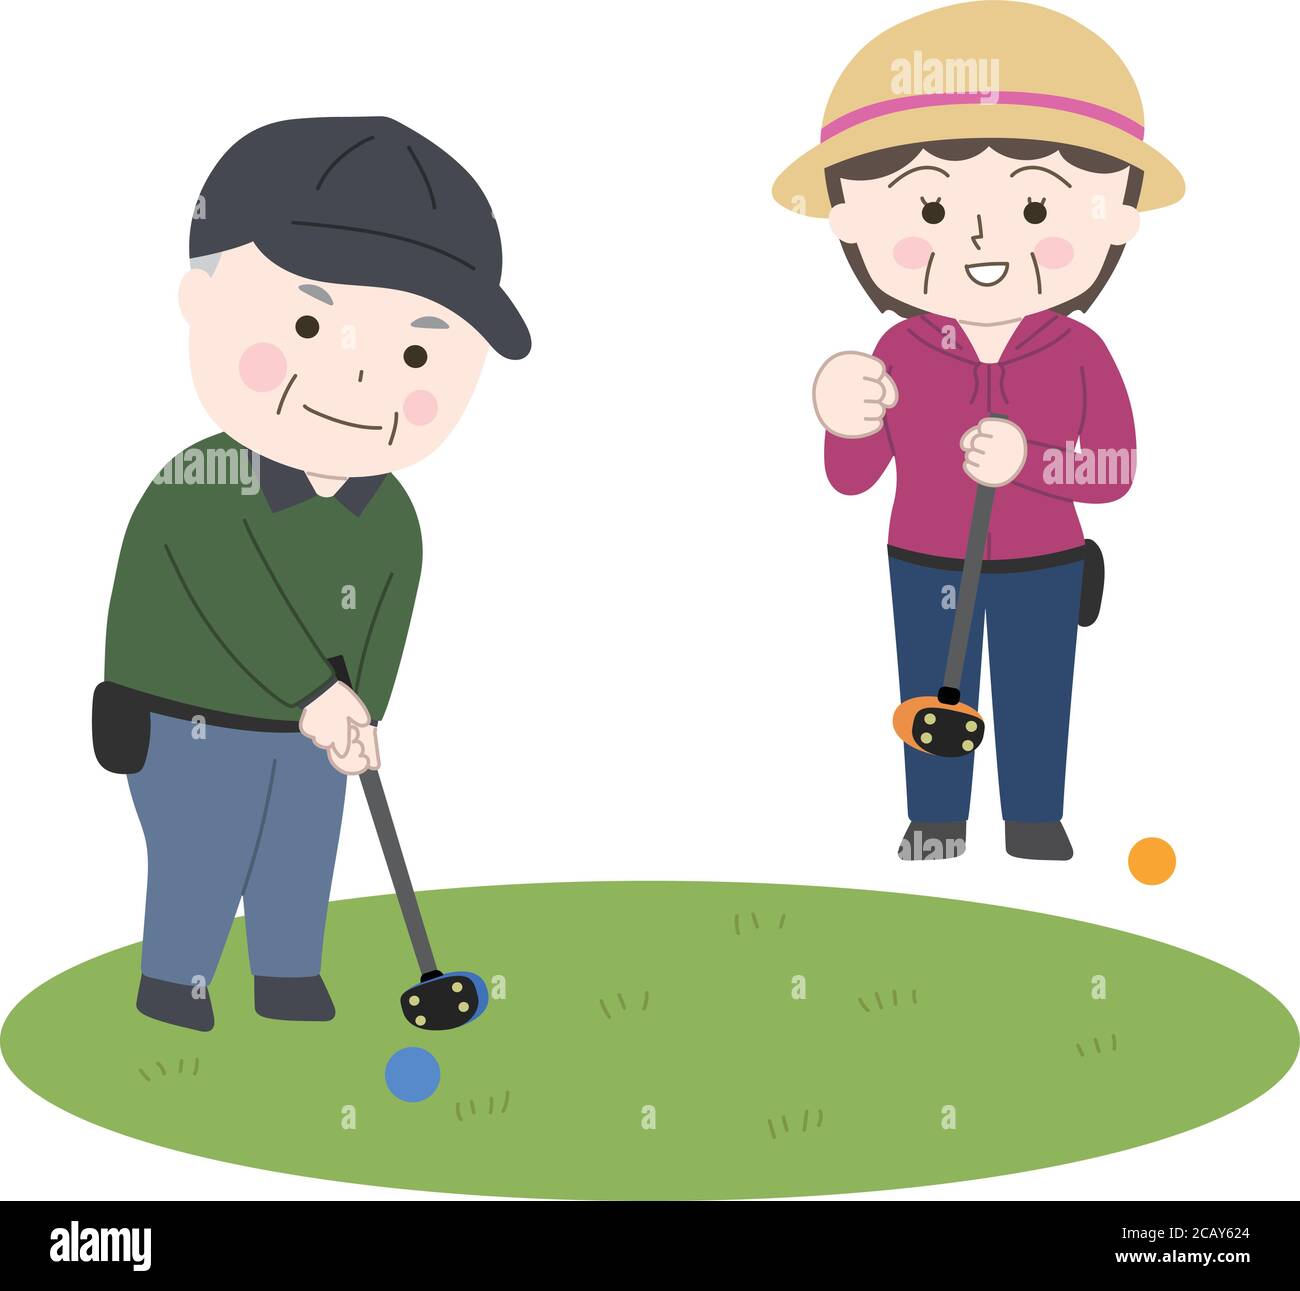 Illustrazione vettoriale isolata su sfondo bianco senza linee principali. L'uomo anziano e la donna che gioca a golf nel parco. Illustrazione Vettoriale